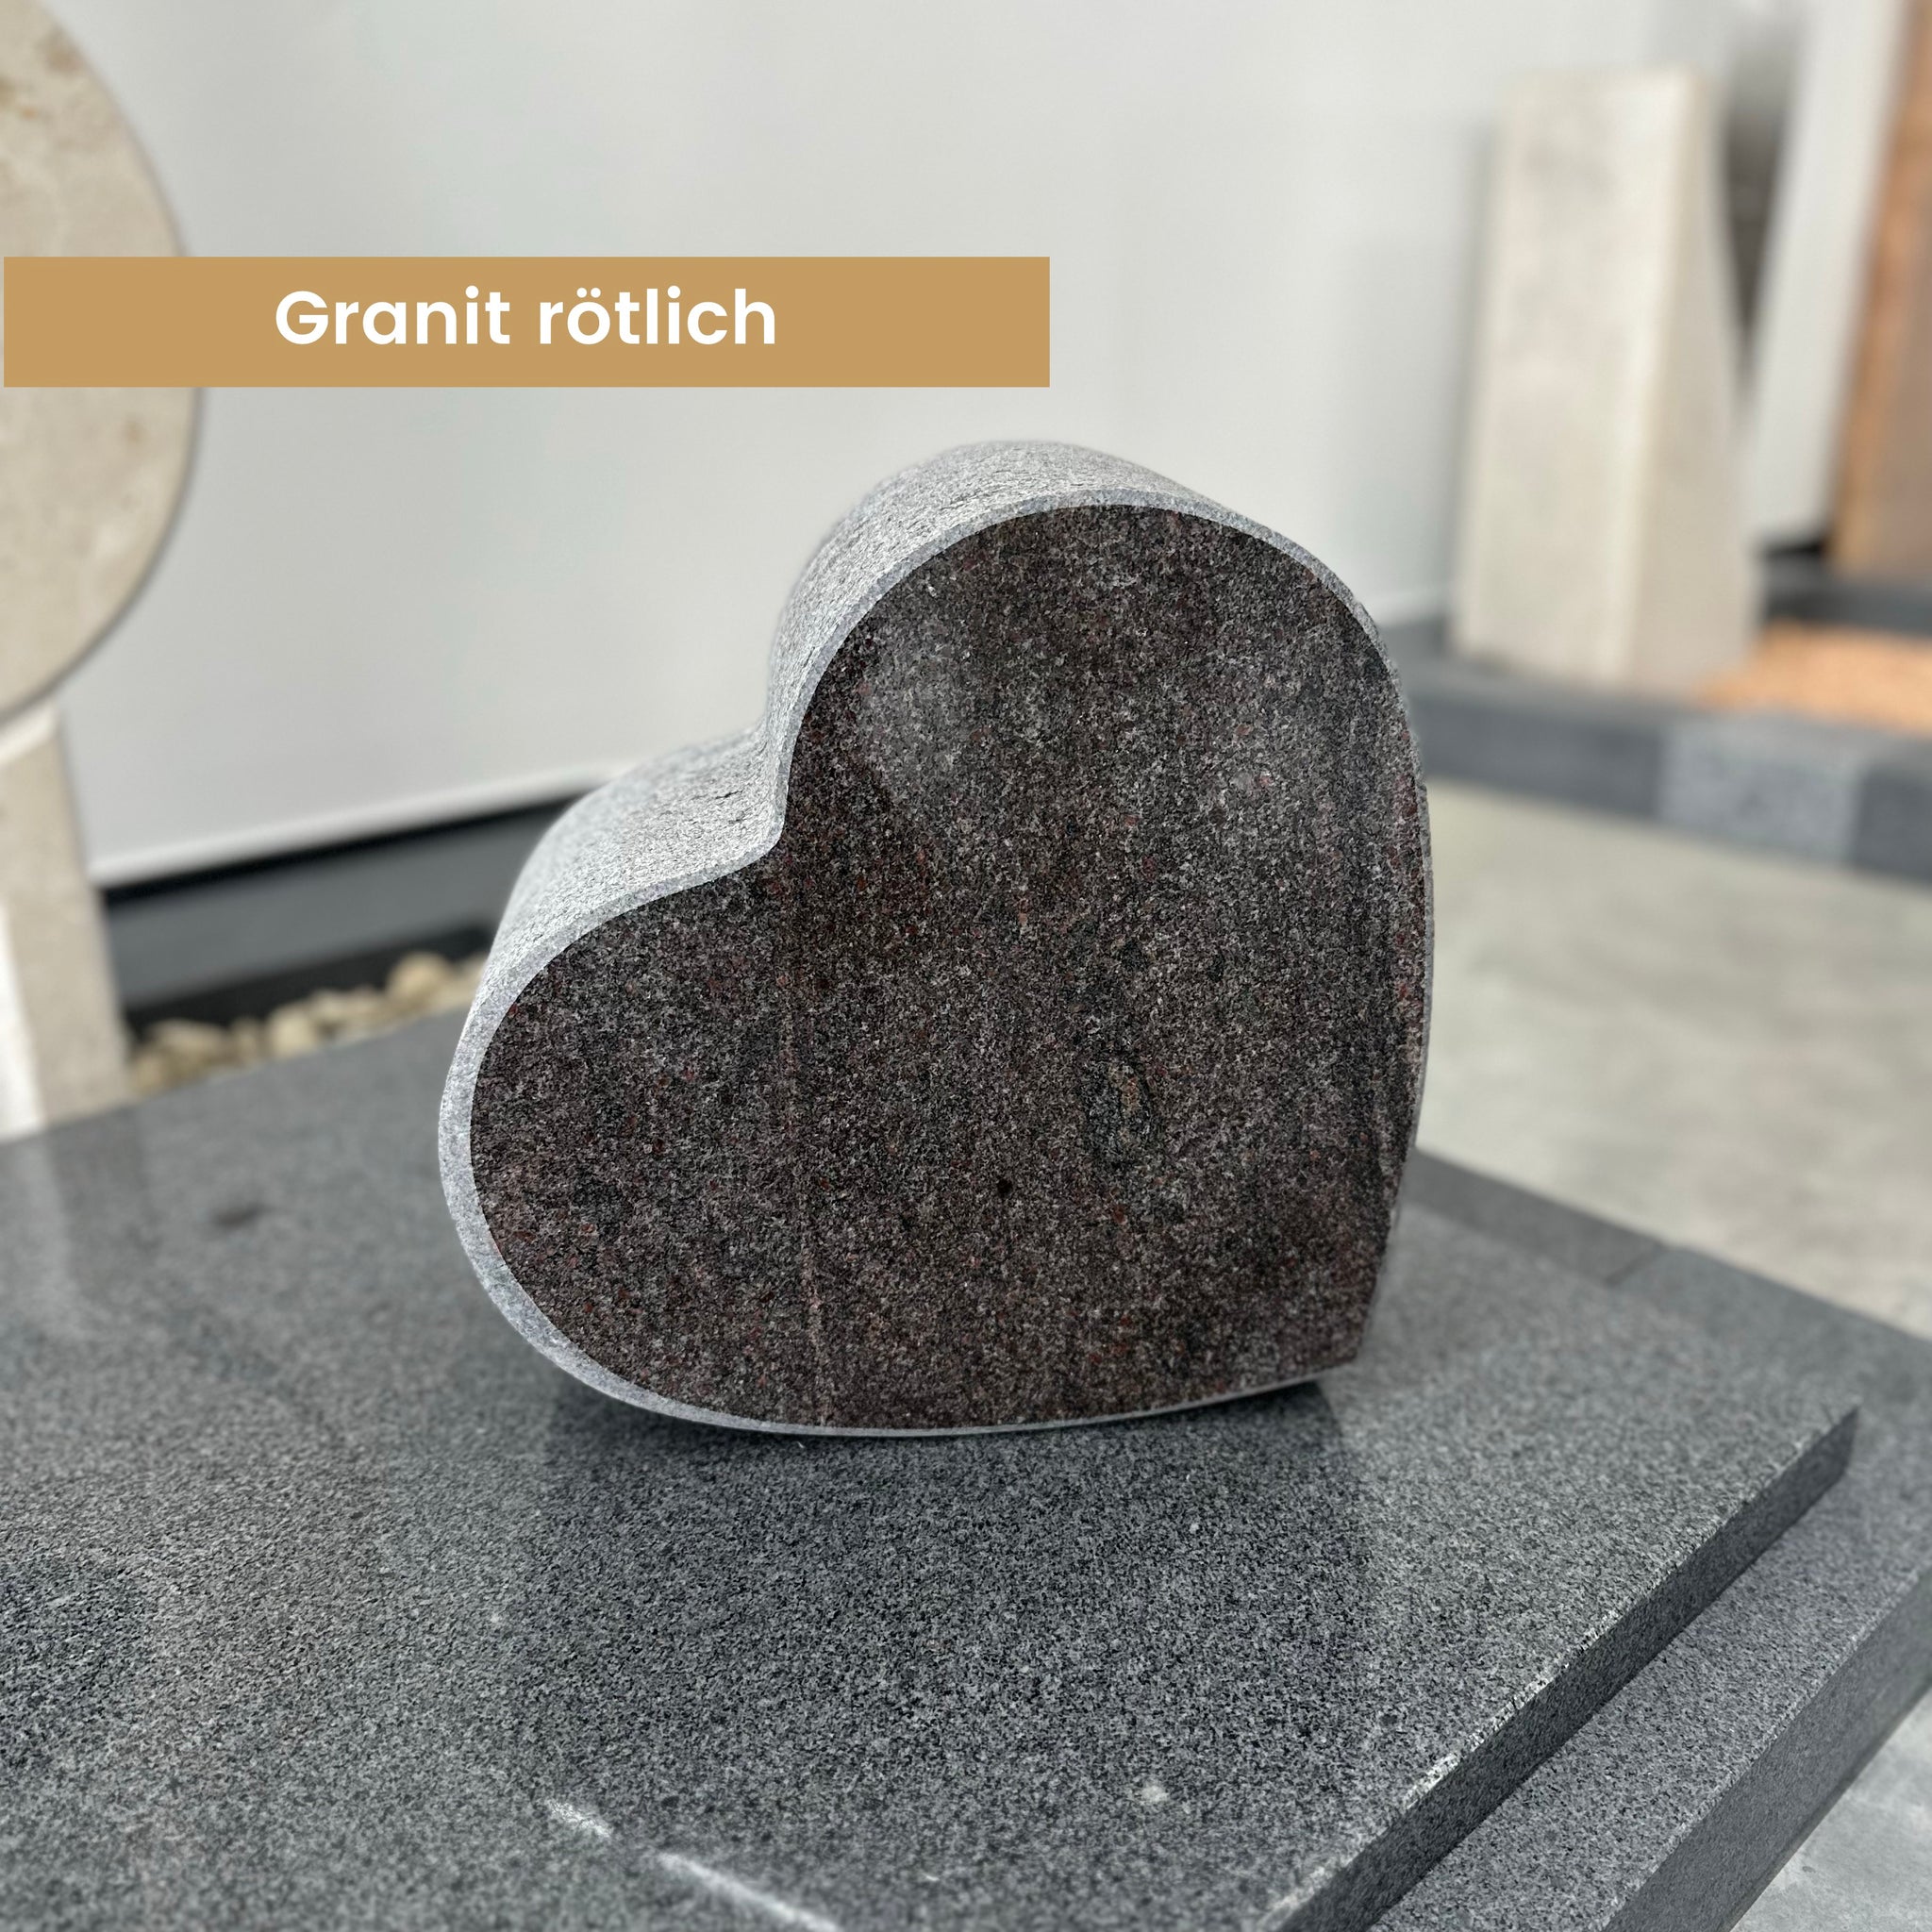 Grabherzen aus Granit, Kalkstein, Sandstein und Diorit